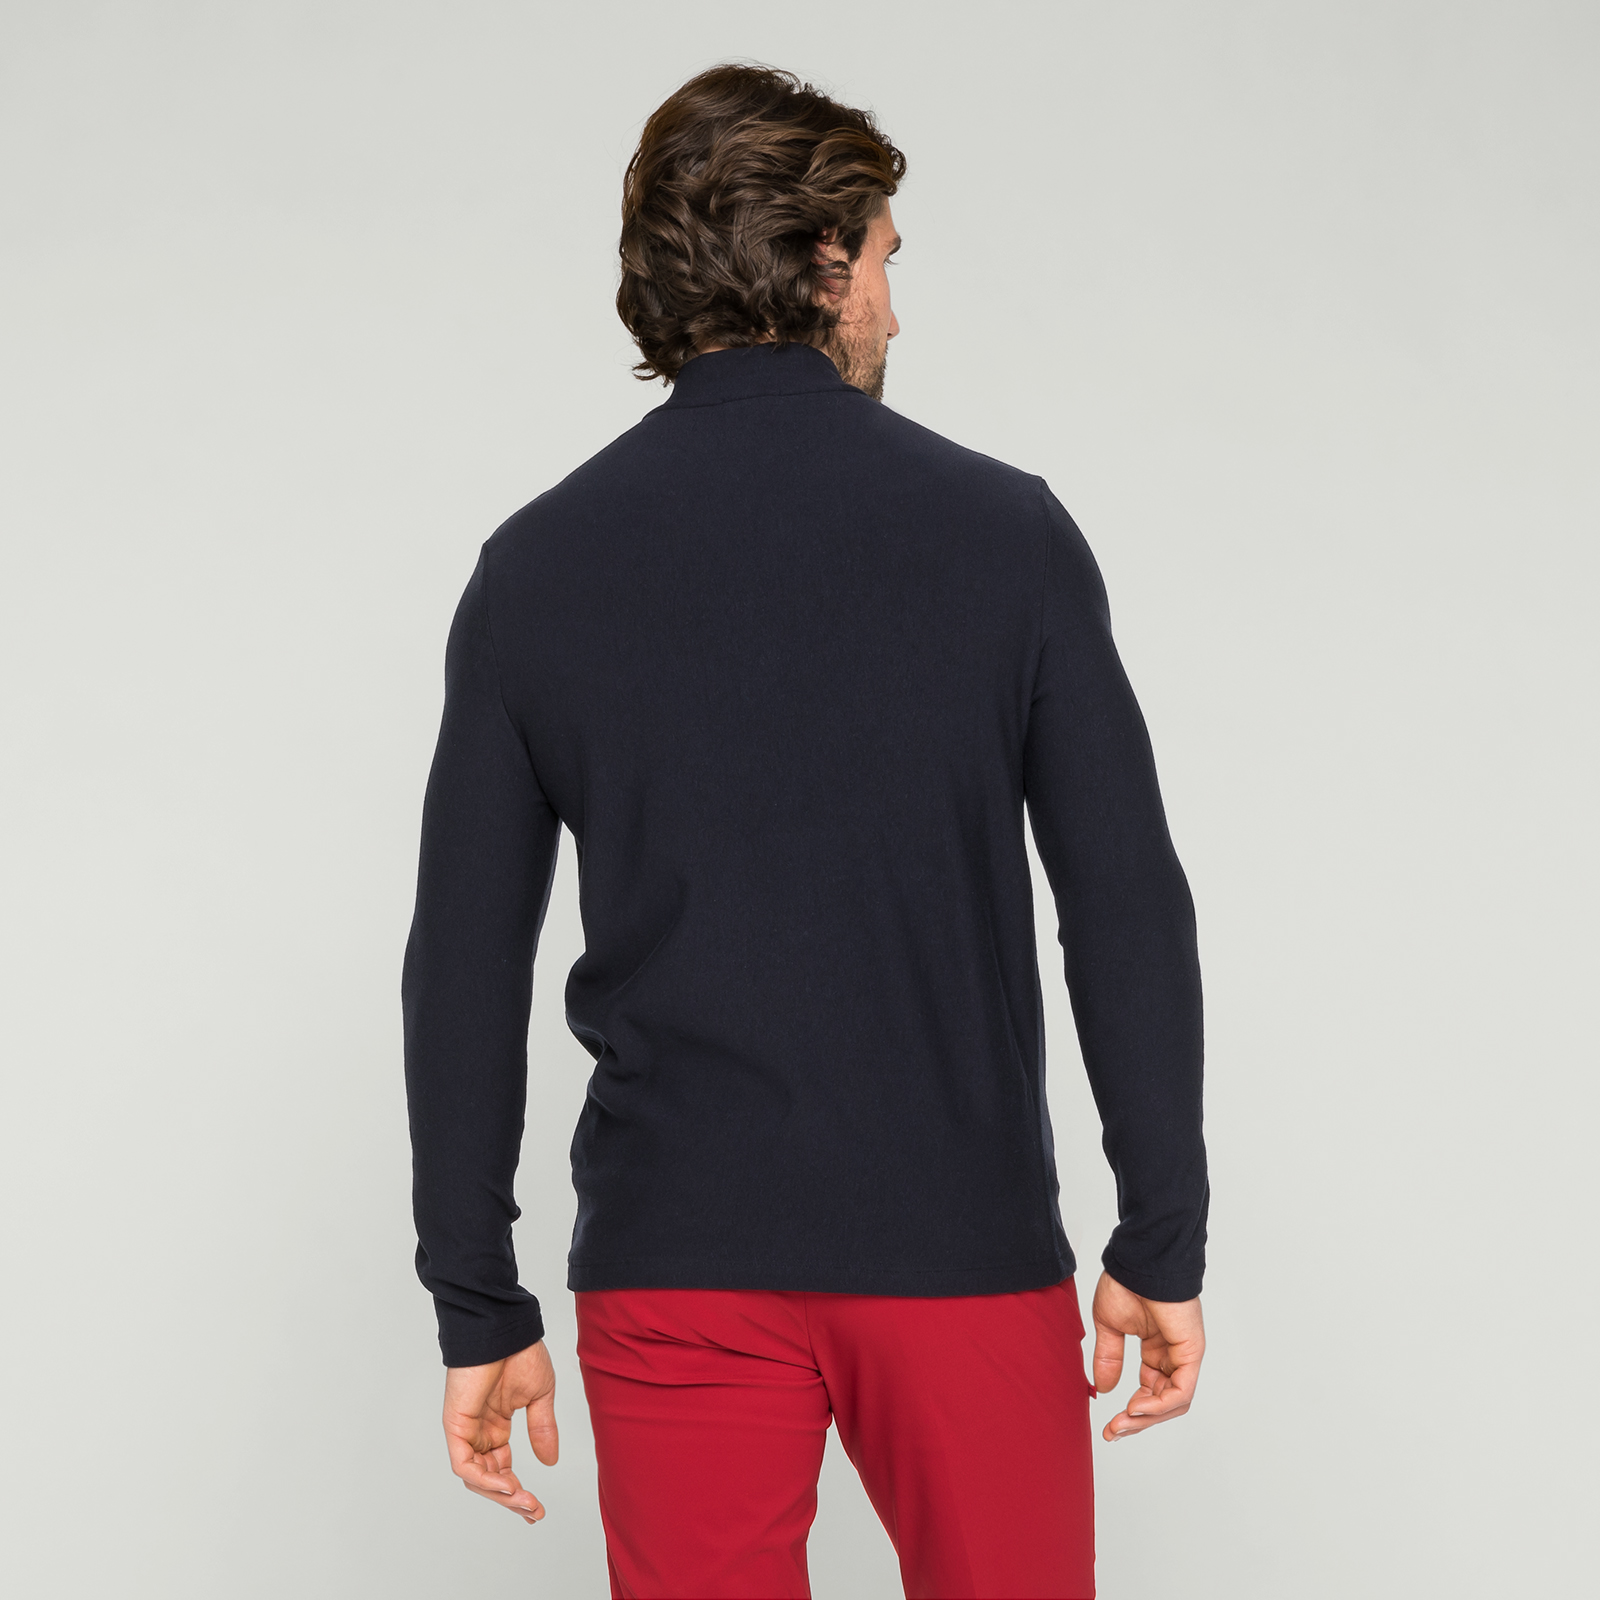 Herre-golfsweater med Tencel-andel